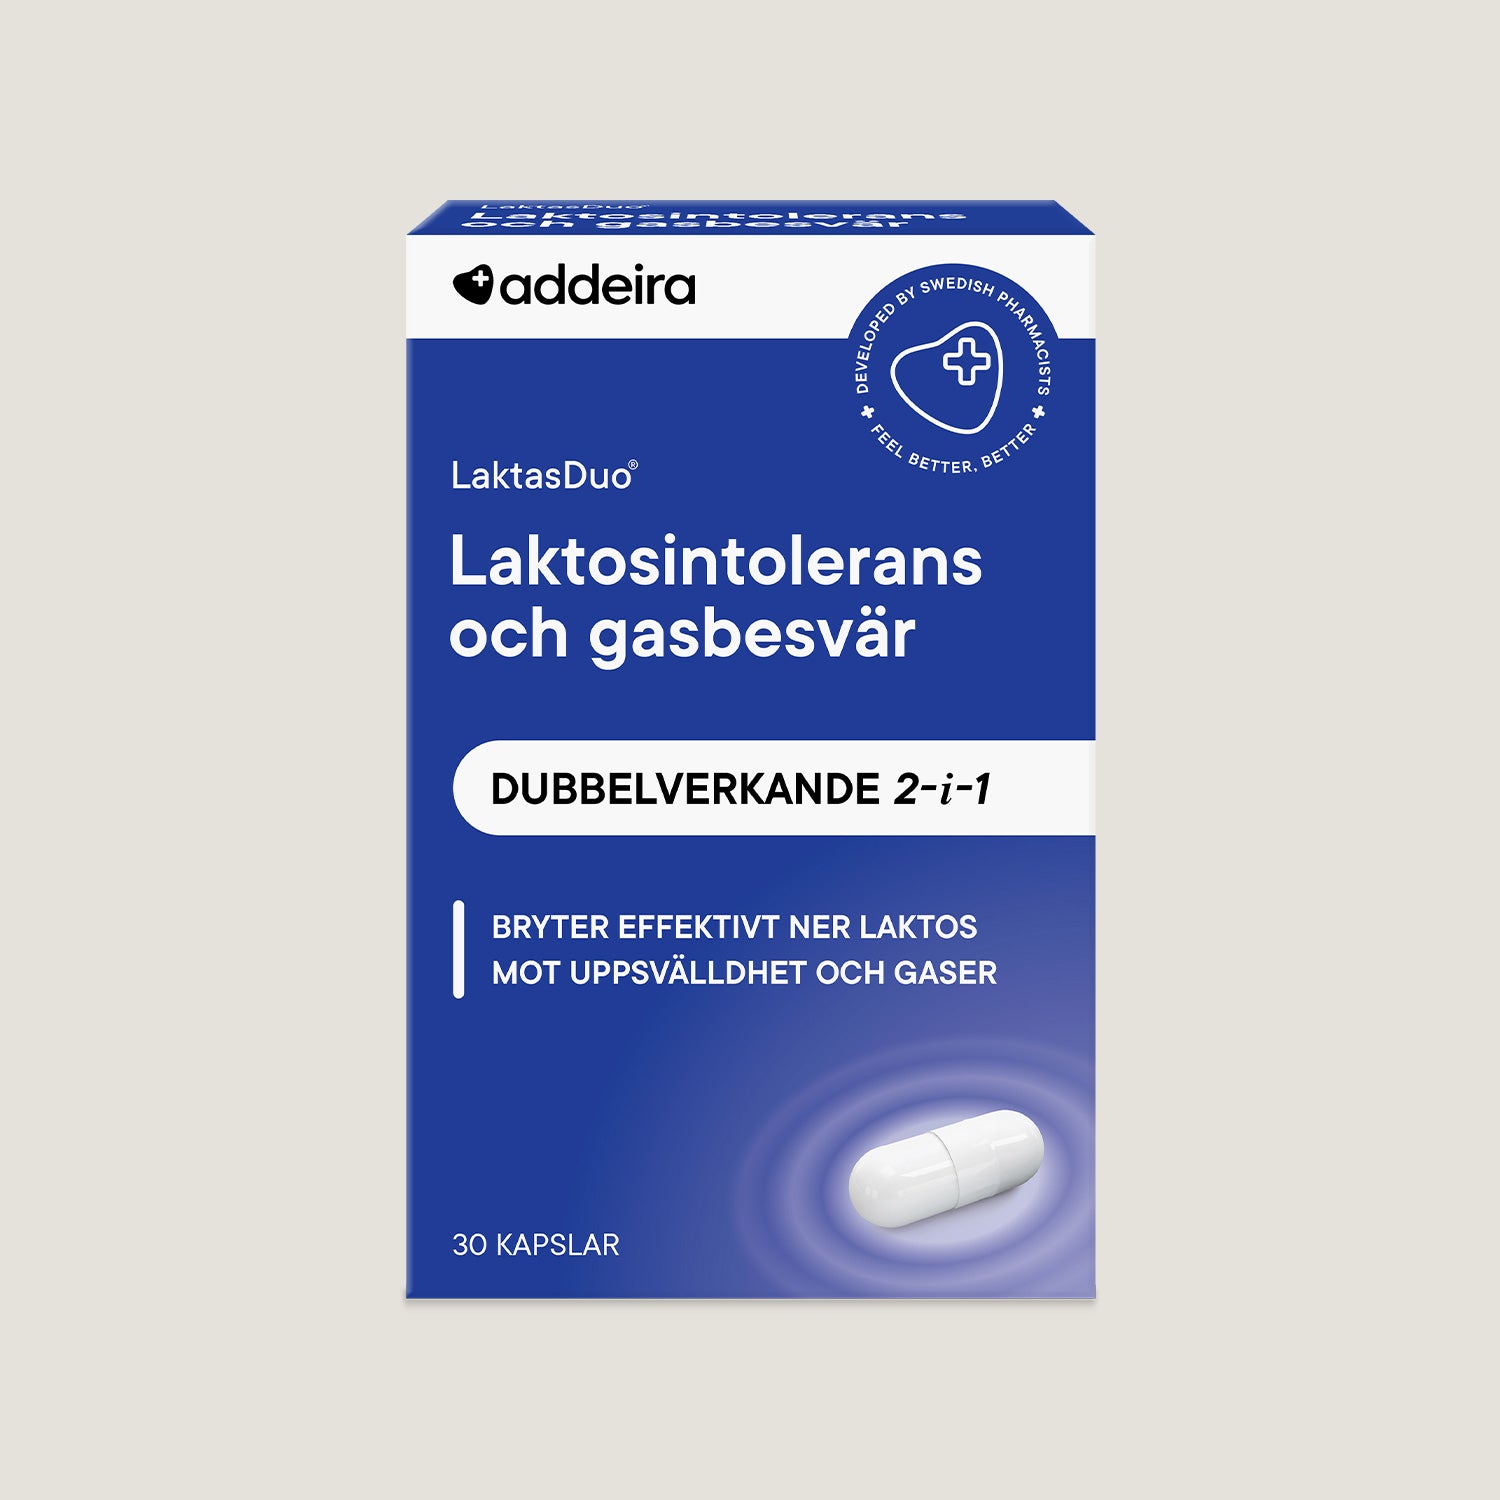 LactaseDuo for lactose intolerance, 30 capsules 